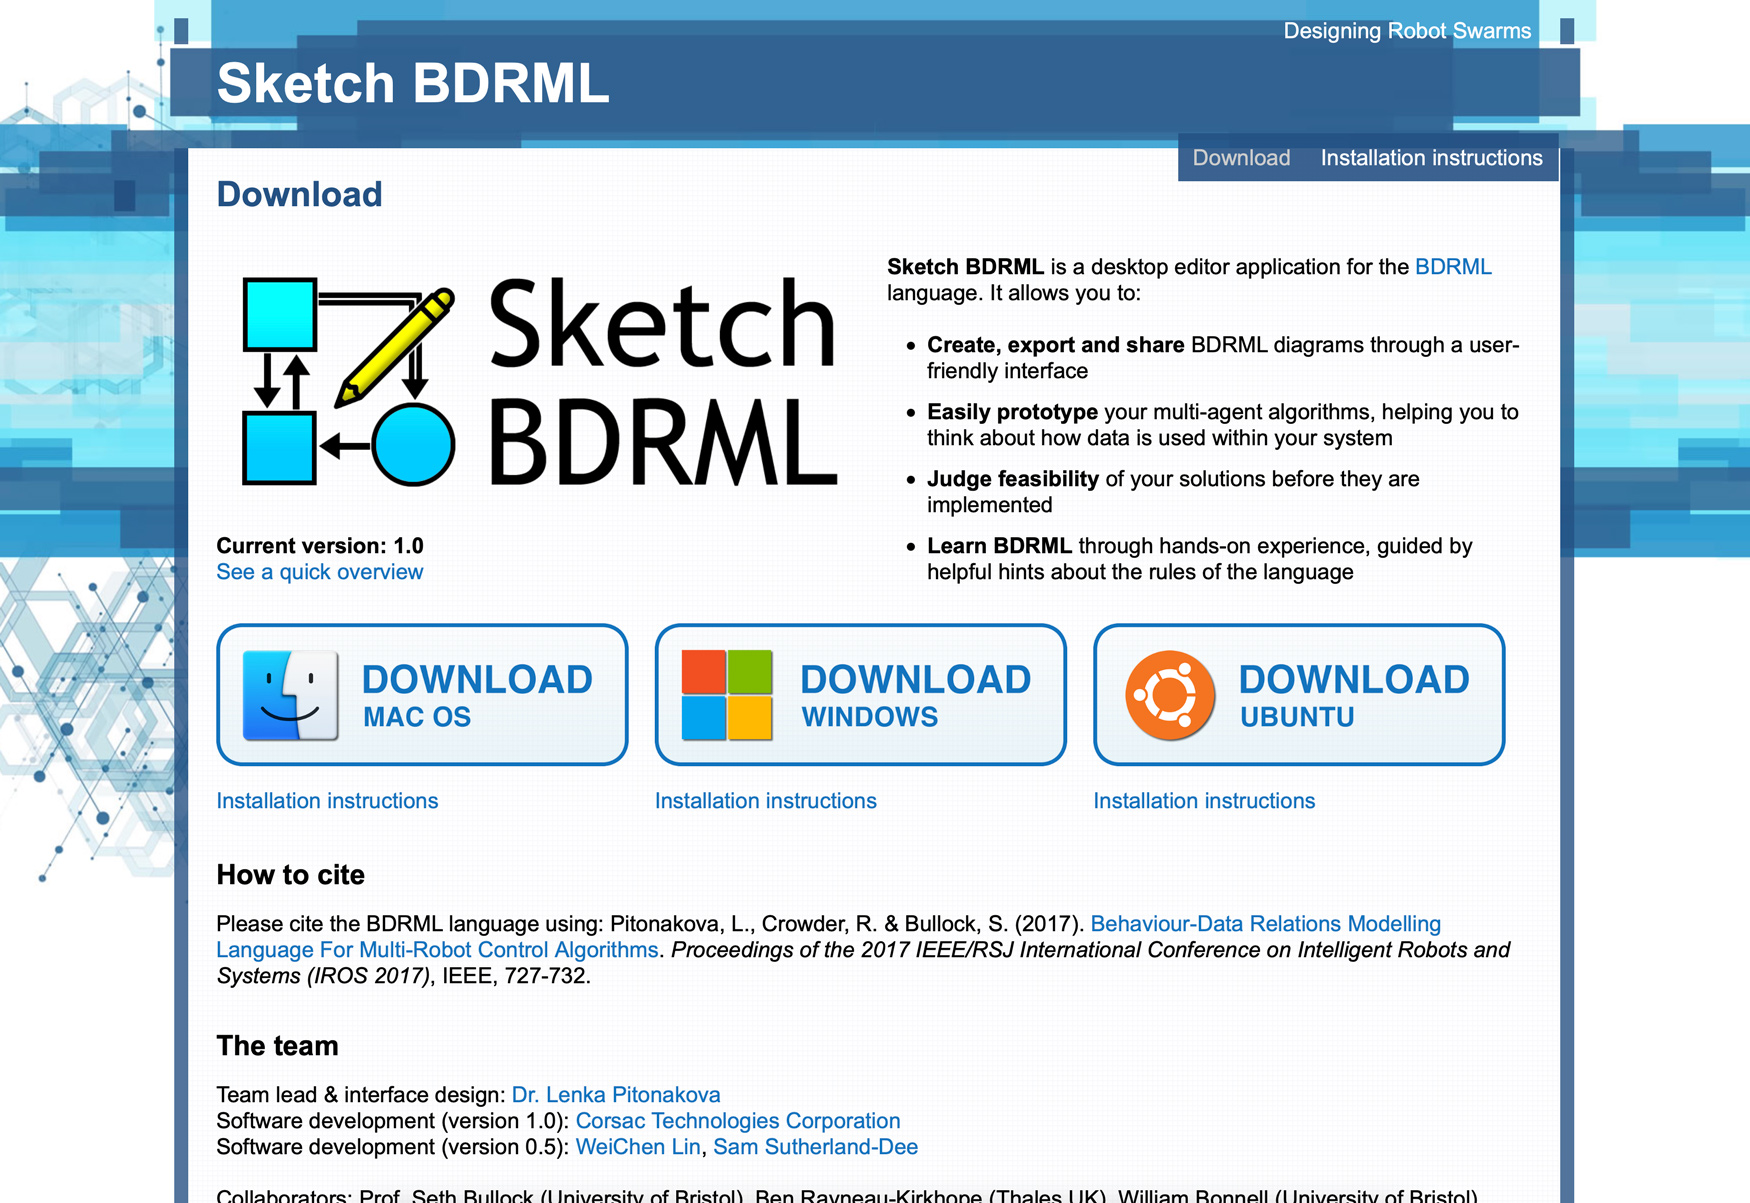 Designing Robot Swarms - Sketch BDRML landing page